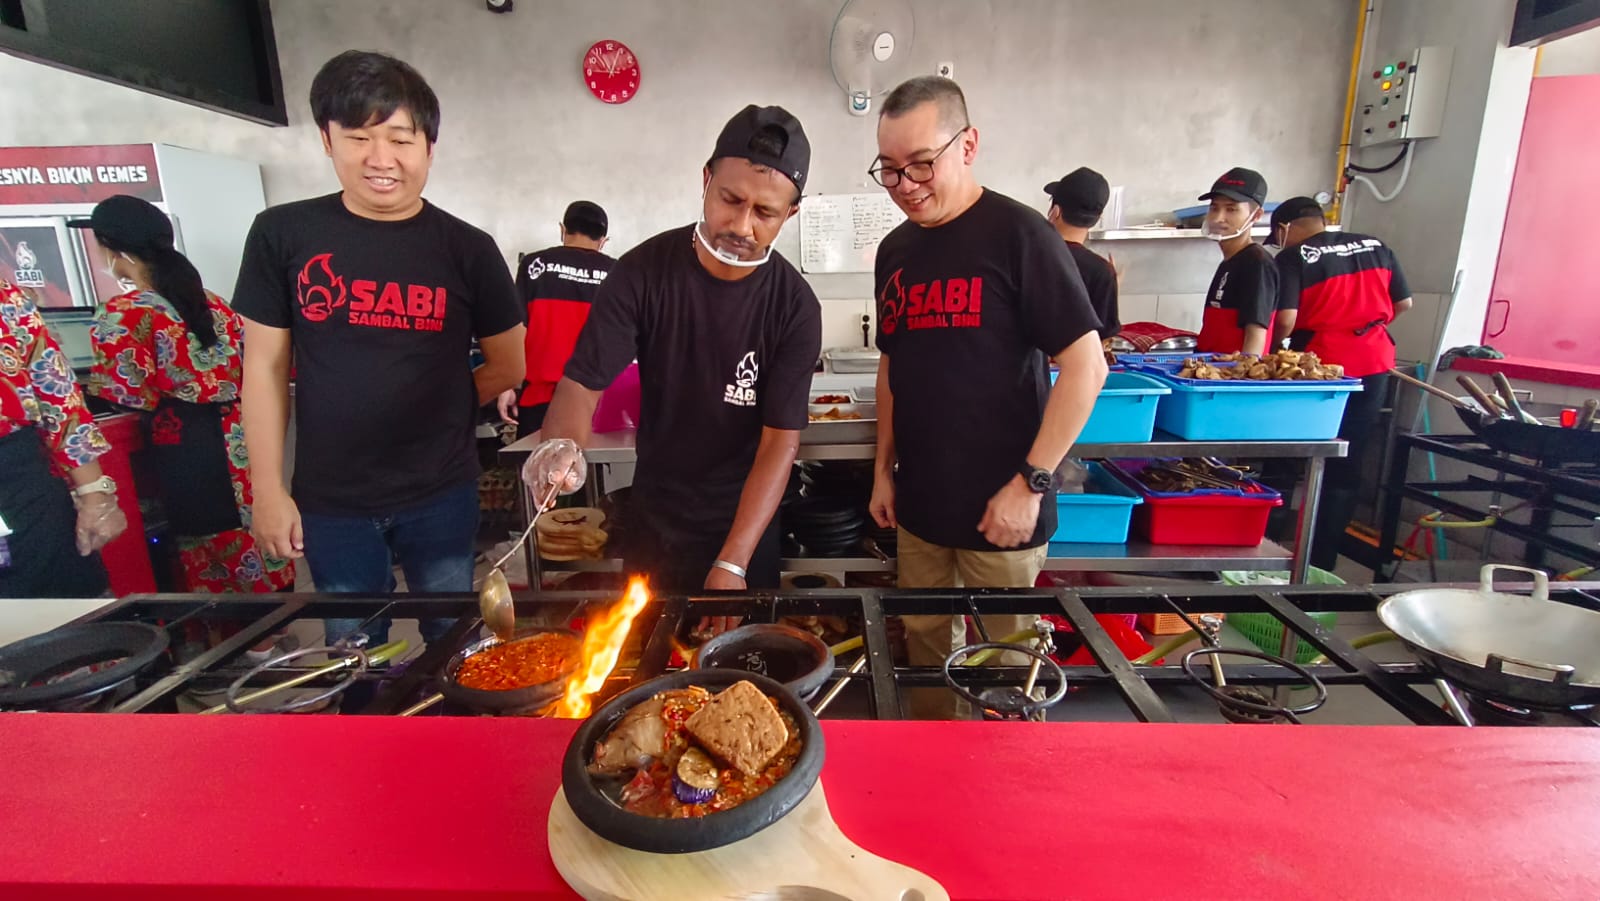 Sensasi Pedas Masakan Rumahan Tersaji di Resto Sambal Bini